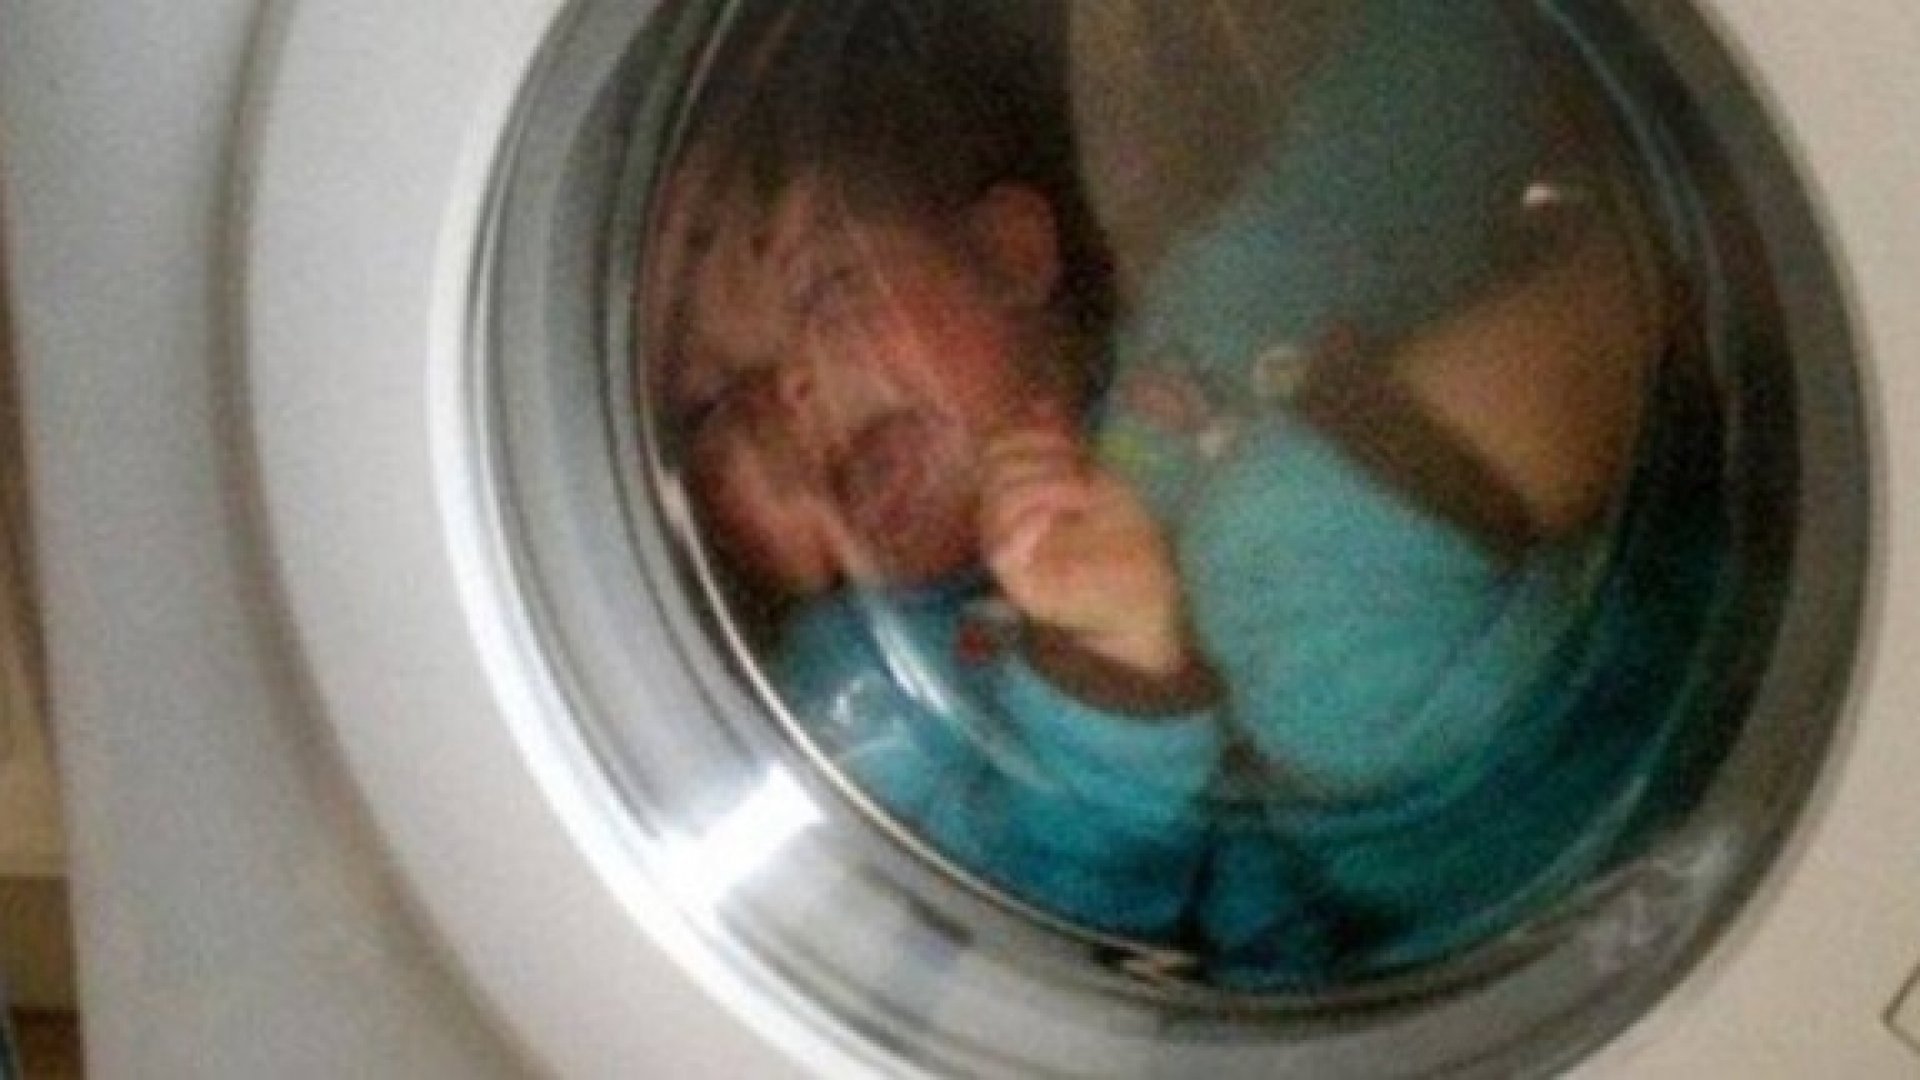  Copil de 7 ani găsit asfixiat în mașina de spălat, în Tulcea